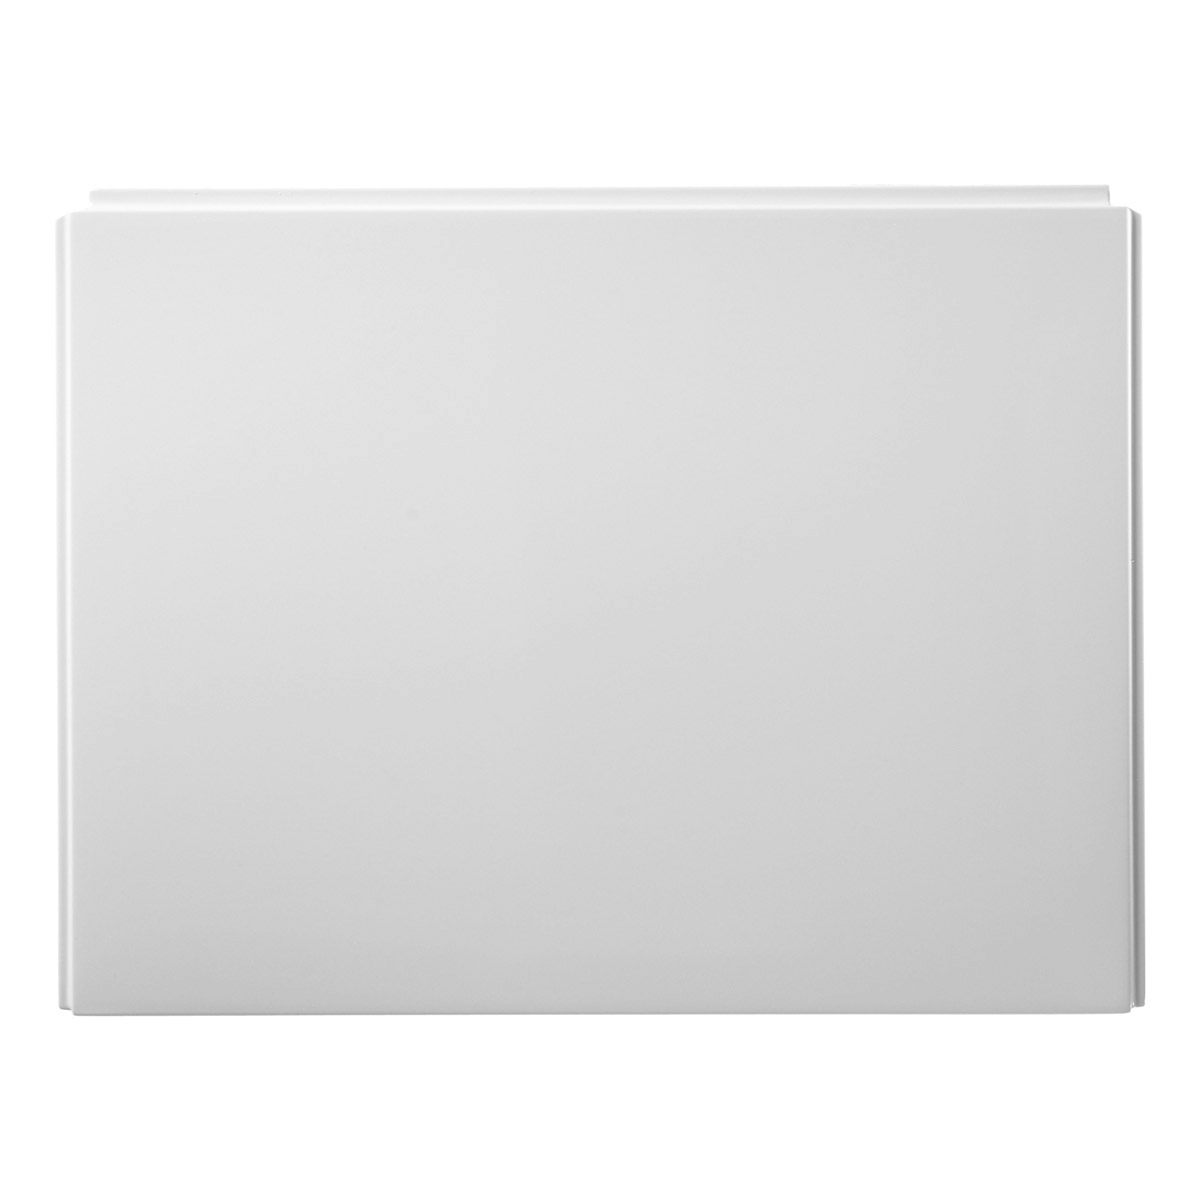 Ideal Standard Unilux Plus end bath panel 700mm | VictoriaPlum.com